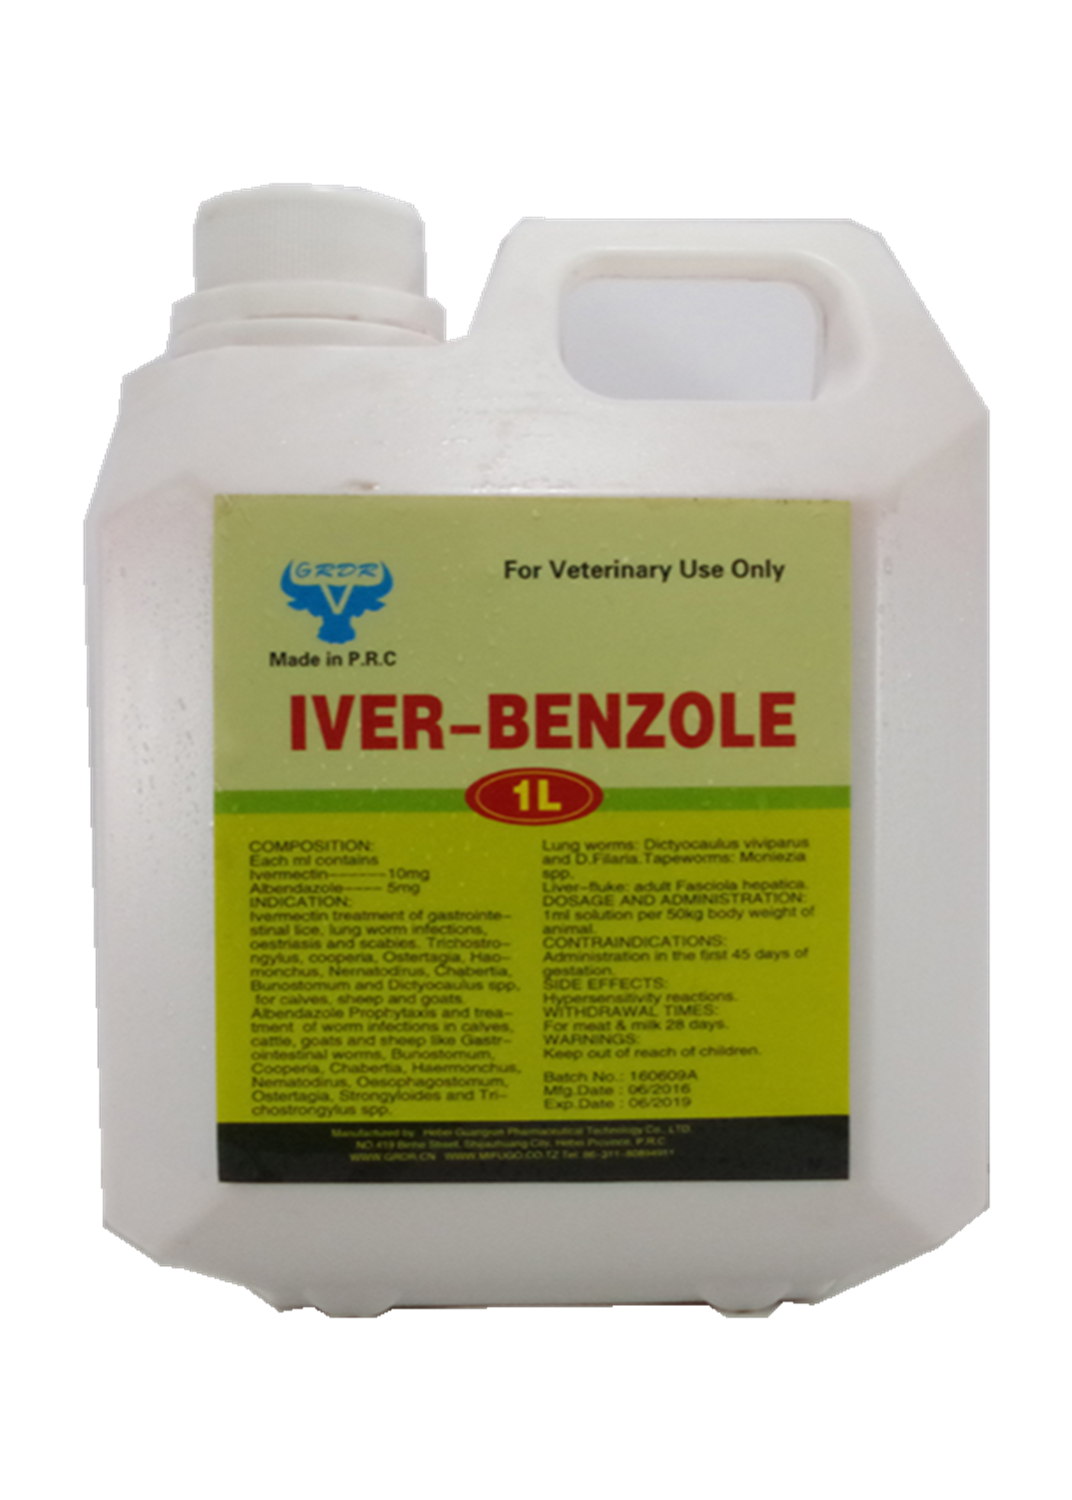 Albendazole and Ivermectin Oral Liquid Veterinary Medicine